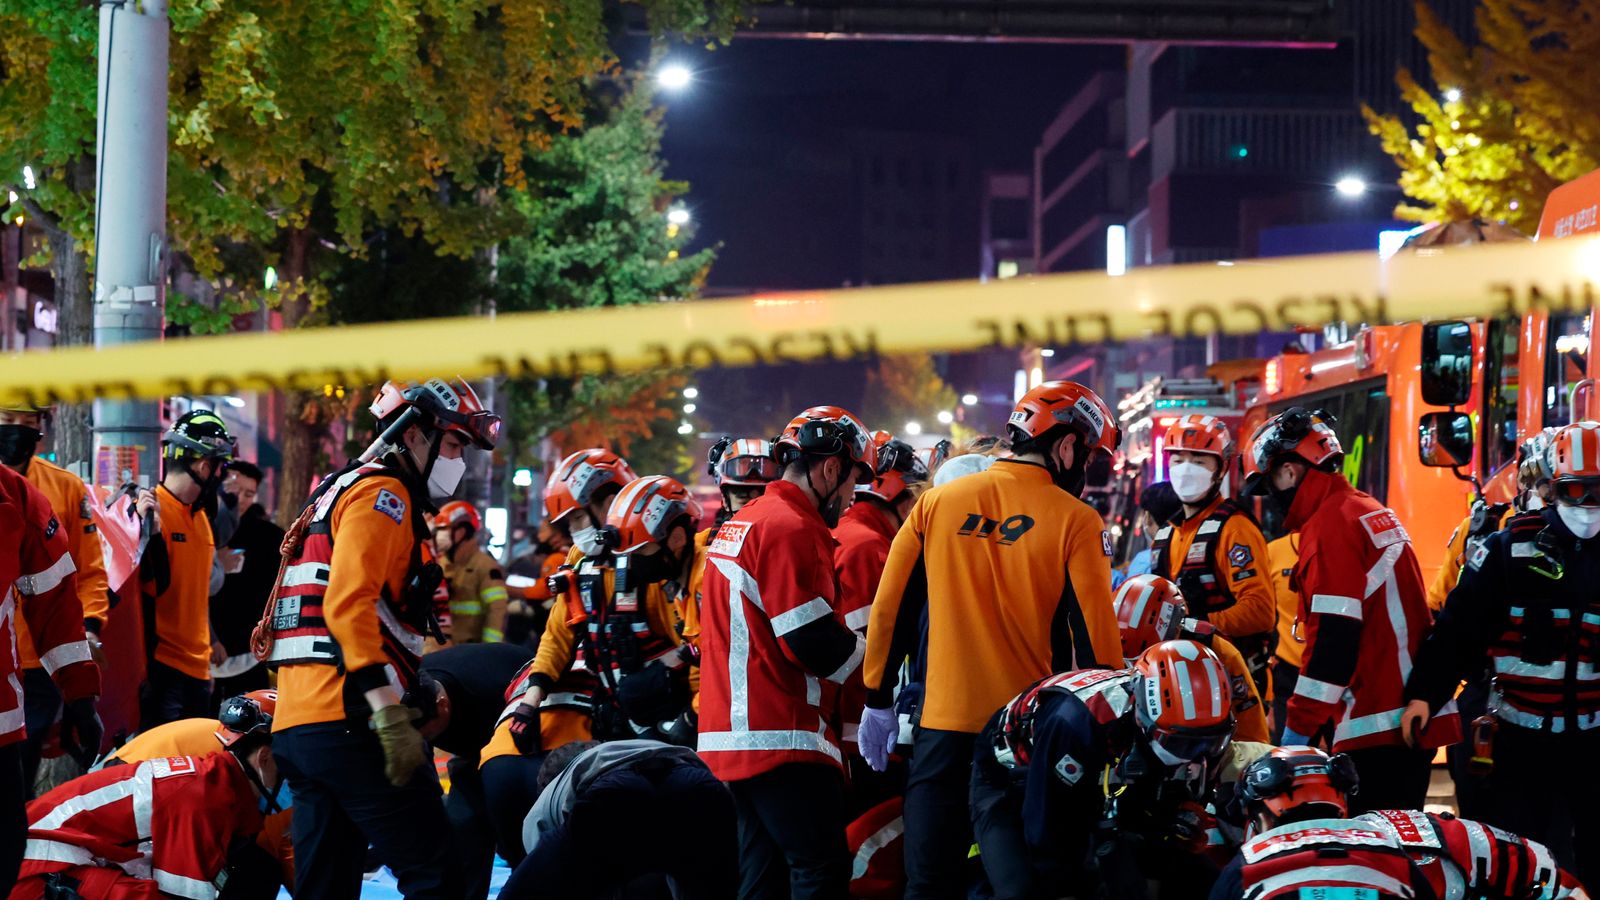 Bousculade en Corée du Sud : ce que nous savons jusqu’à présent de l’écrasement de la foule qui a fait des dizaines de morts |  Nouvelles du monde